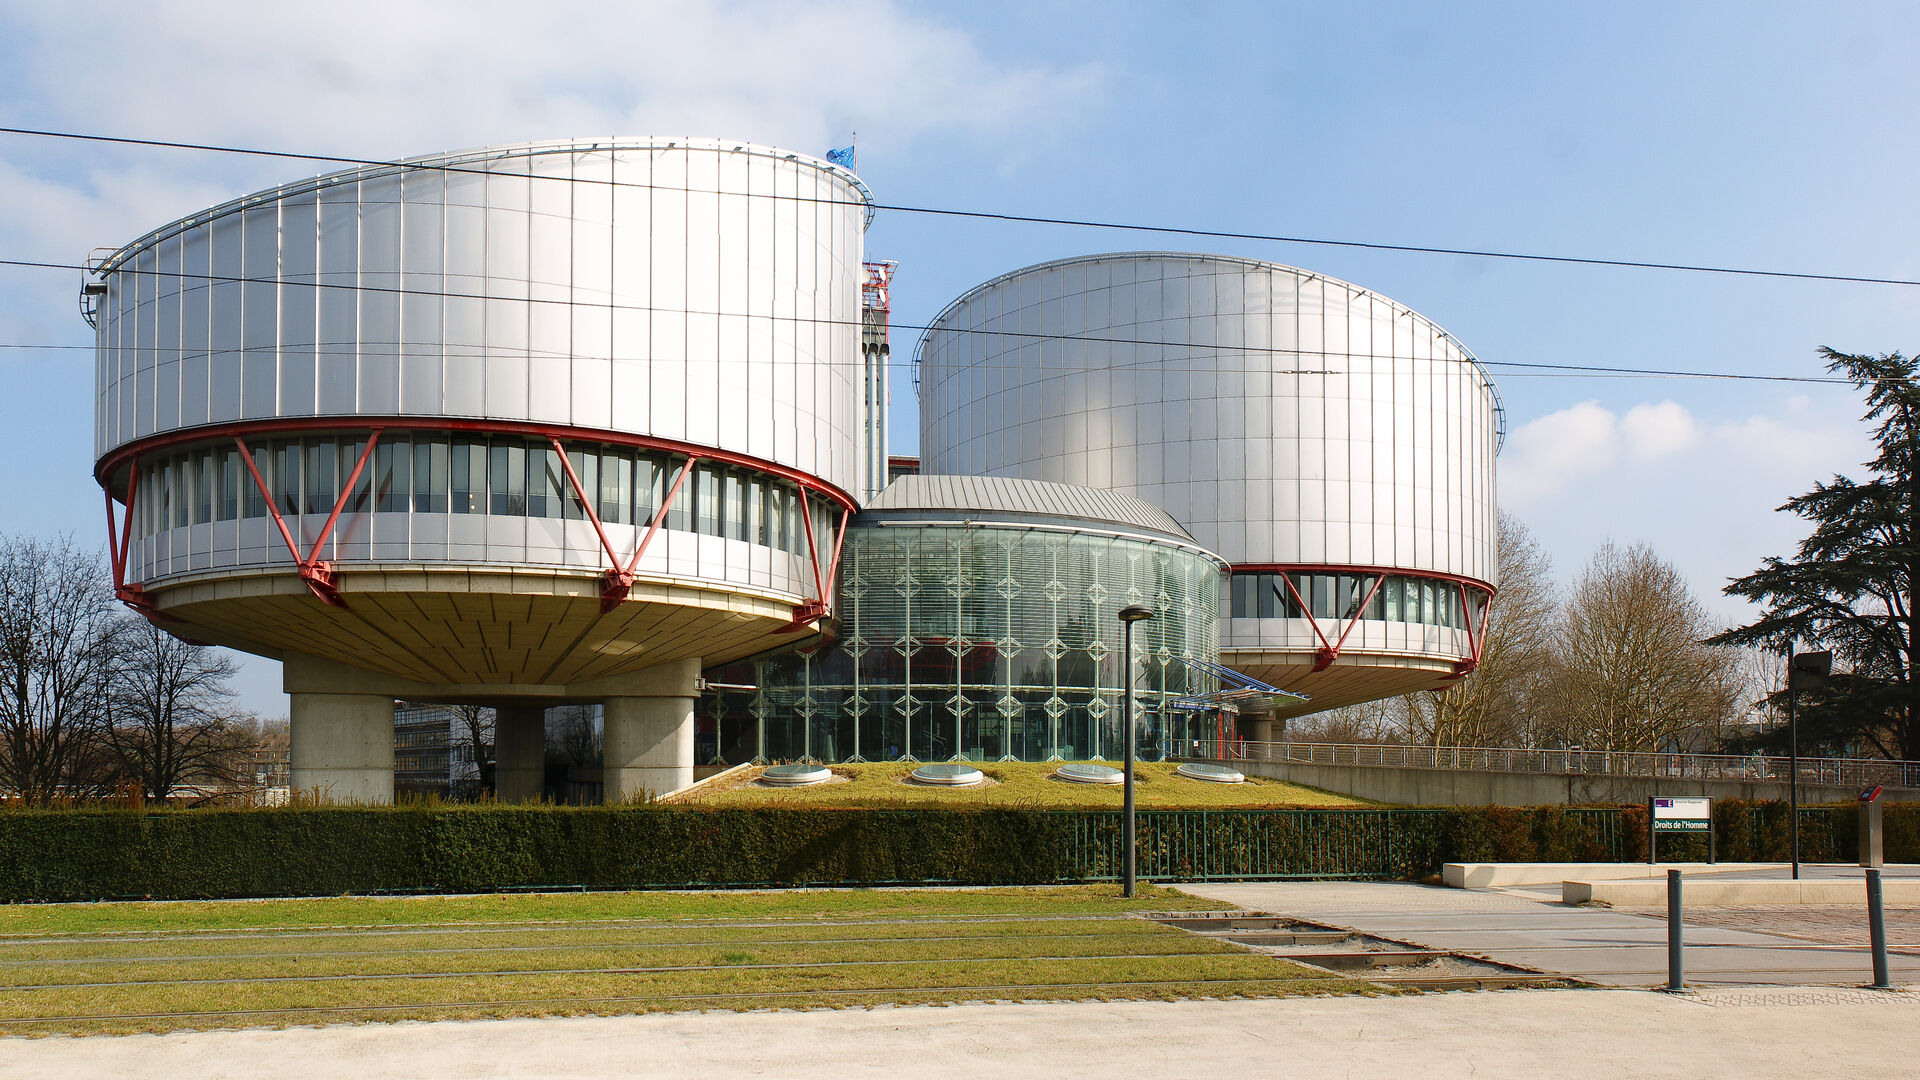 Bygningen hvor Den europeiske menneskerettighetsdomstolen holder til. Bygget er utpreget moderne. To sylinderformede konstruksjoner med glitrende metall og store glassflater utgjør fasaden.